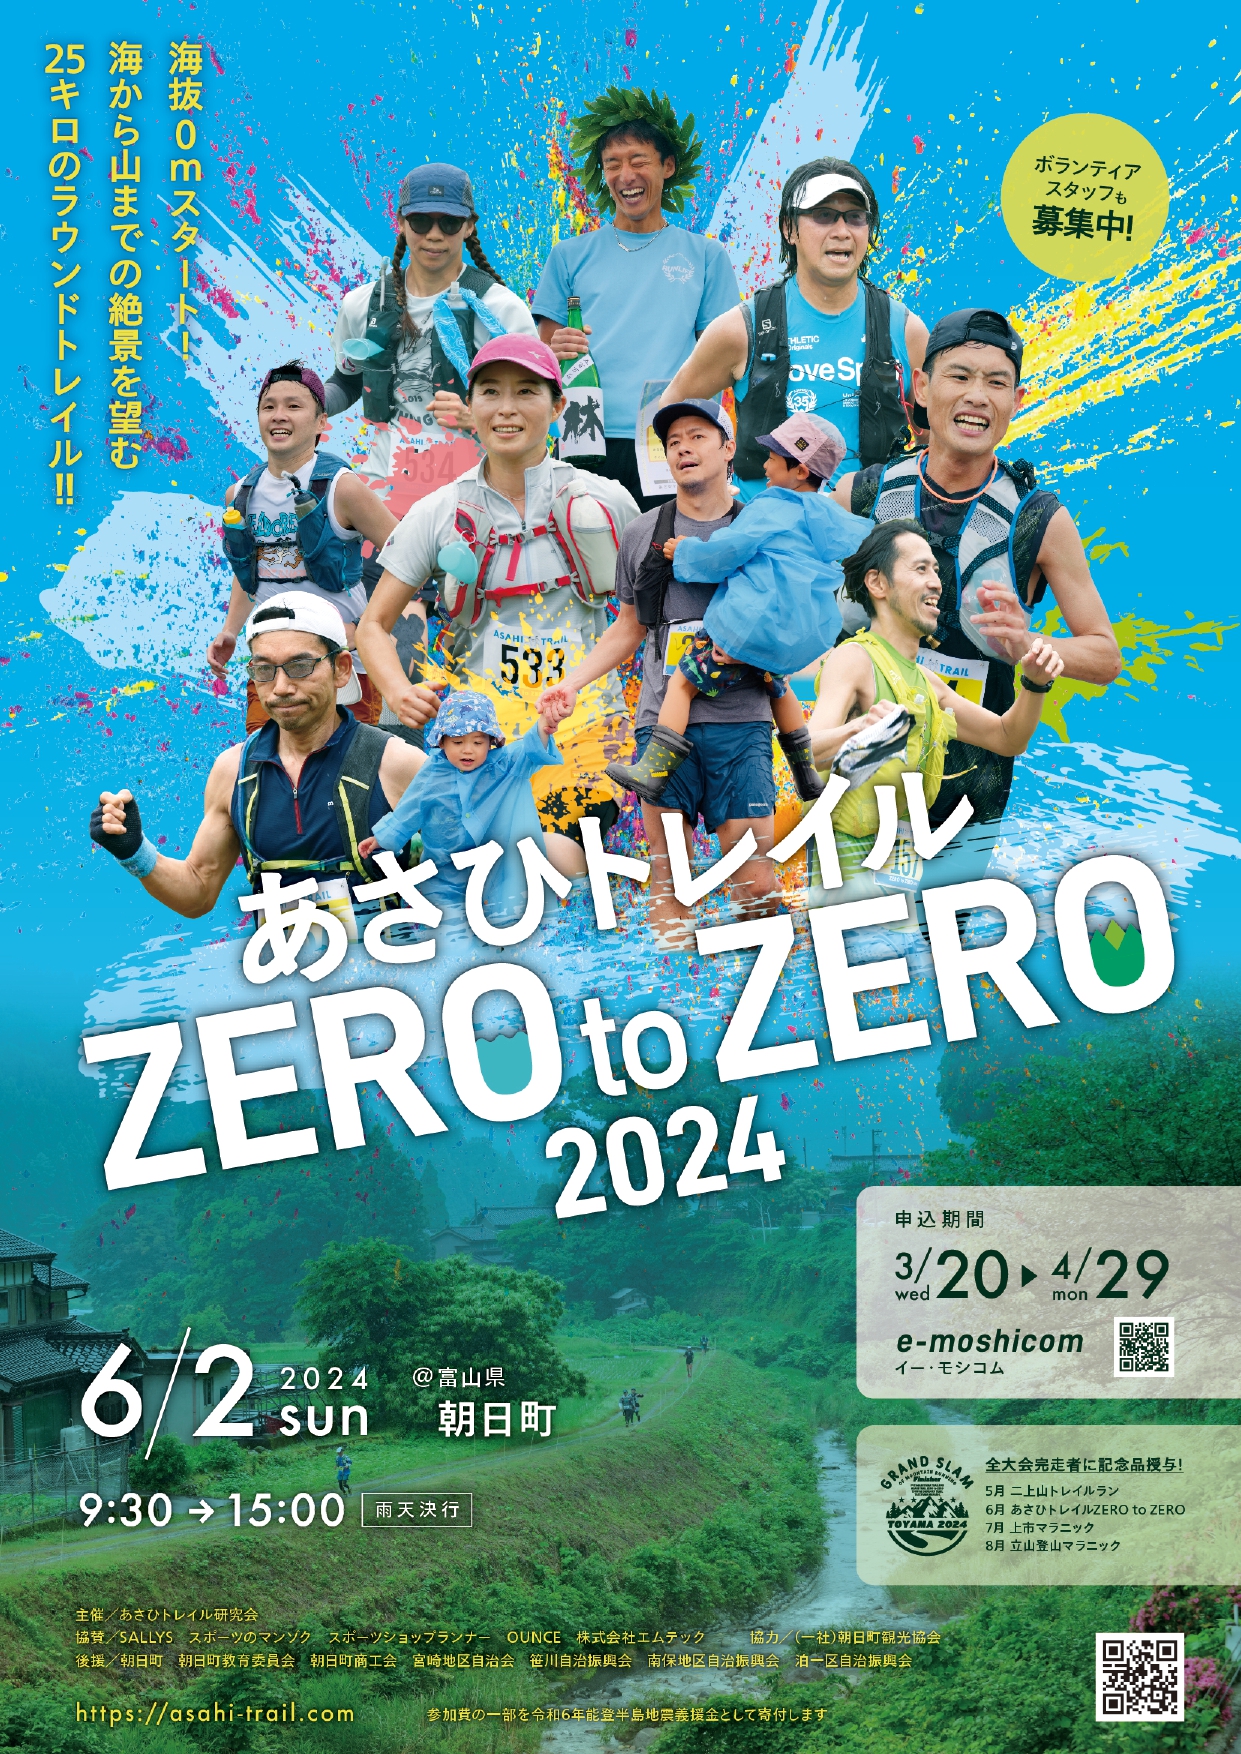 [2024 W10-11] Dọn dẹp pain cave, đăng ký chạy trail ở Nhật - toyama zero to zero 2024